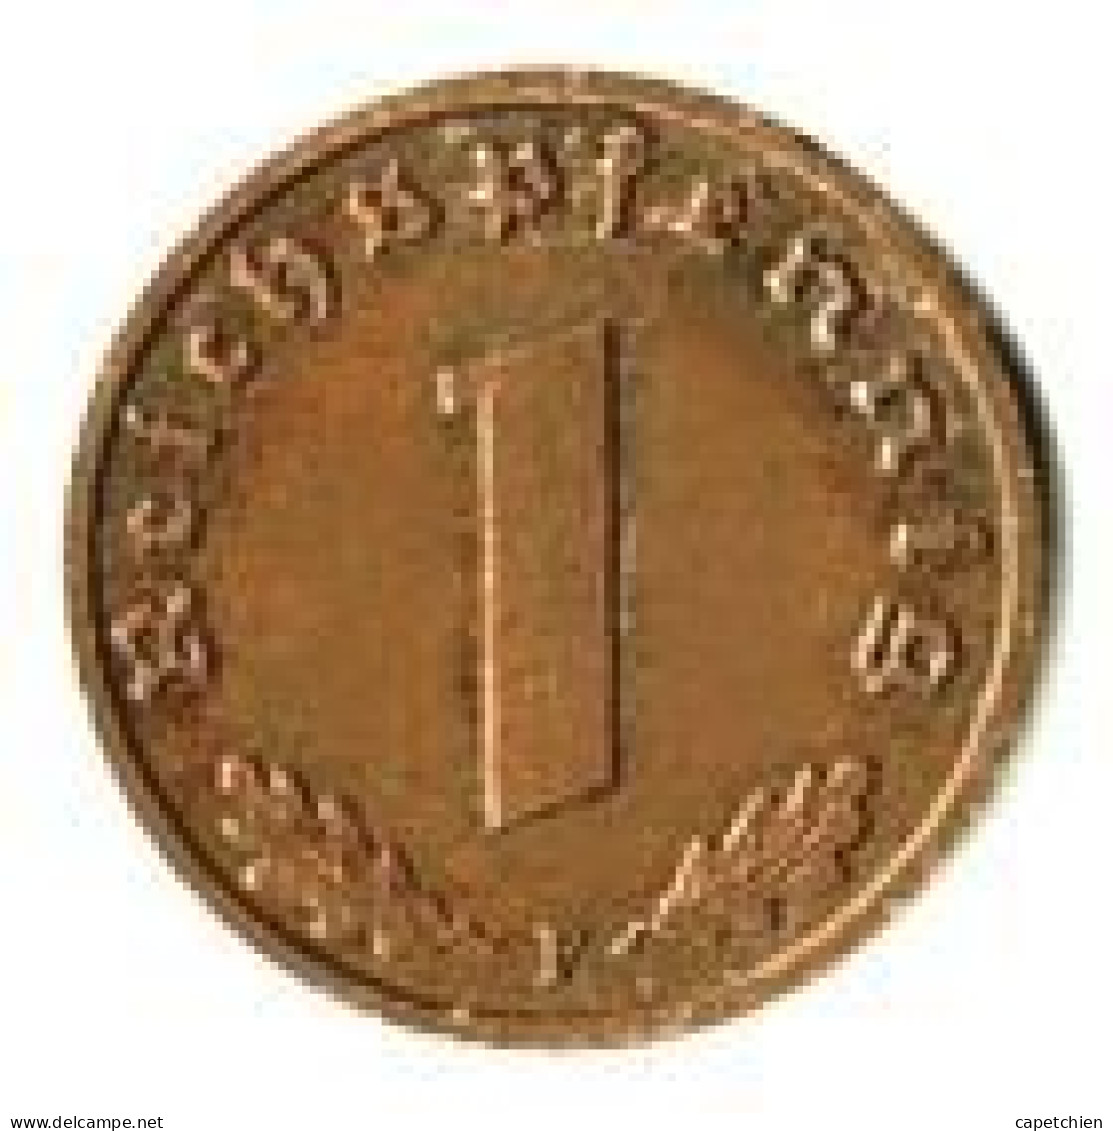 ALLEMAGNE / 1 REICHSPFENNIG / 1938 F / ETAT SUP / 1.90 G. - 1 Reichspfennig